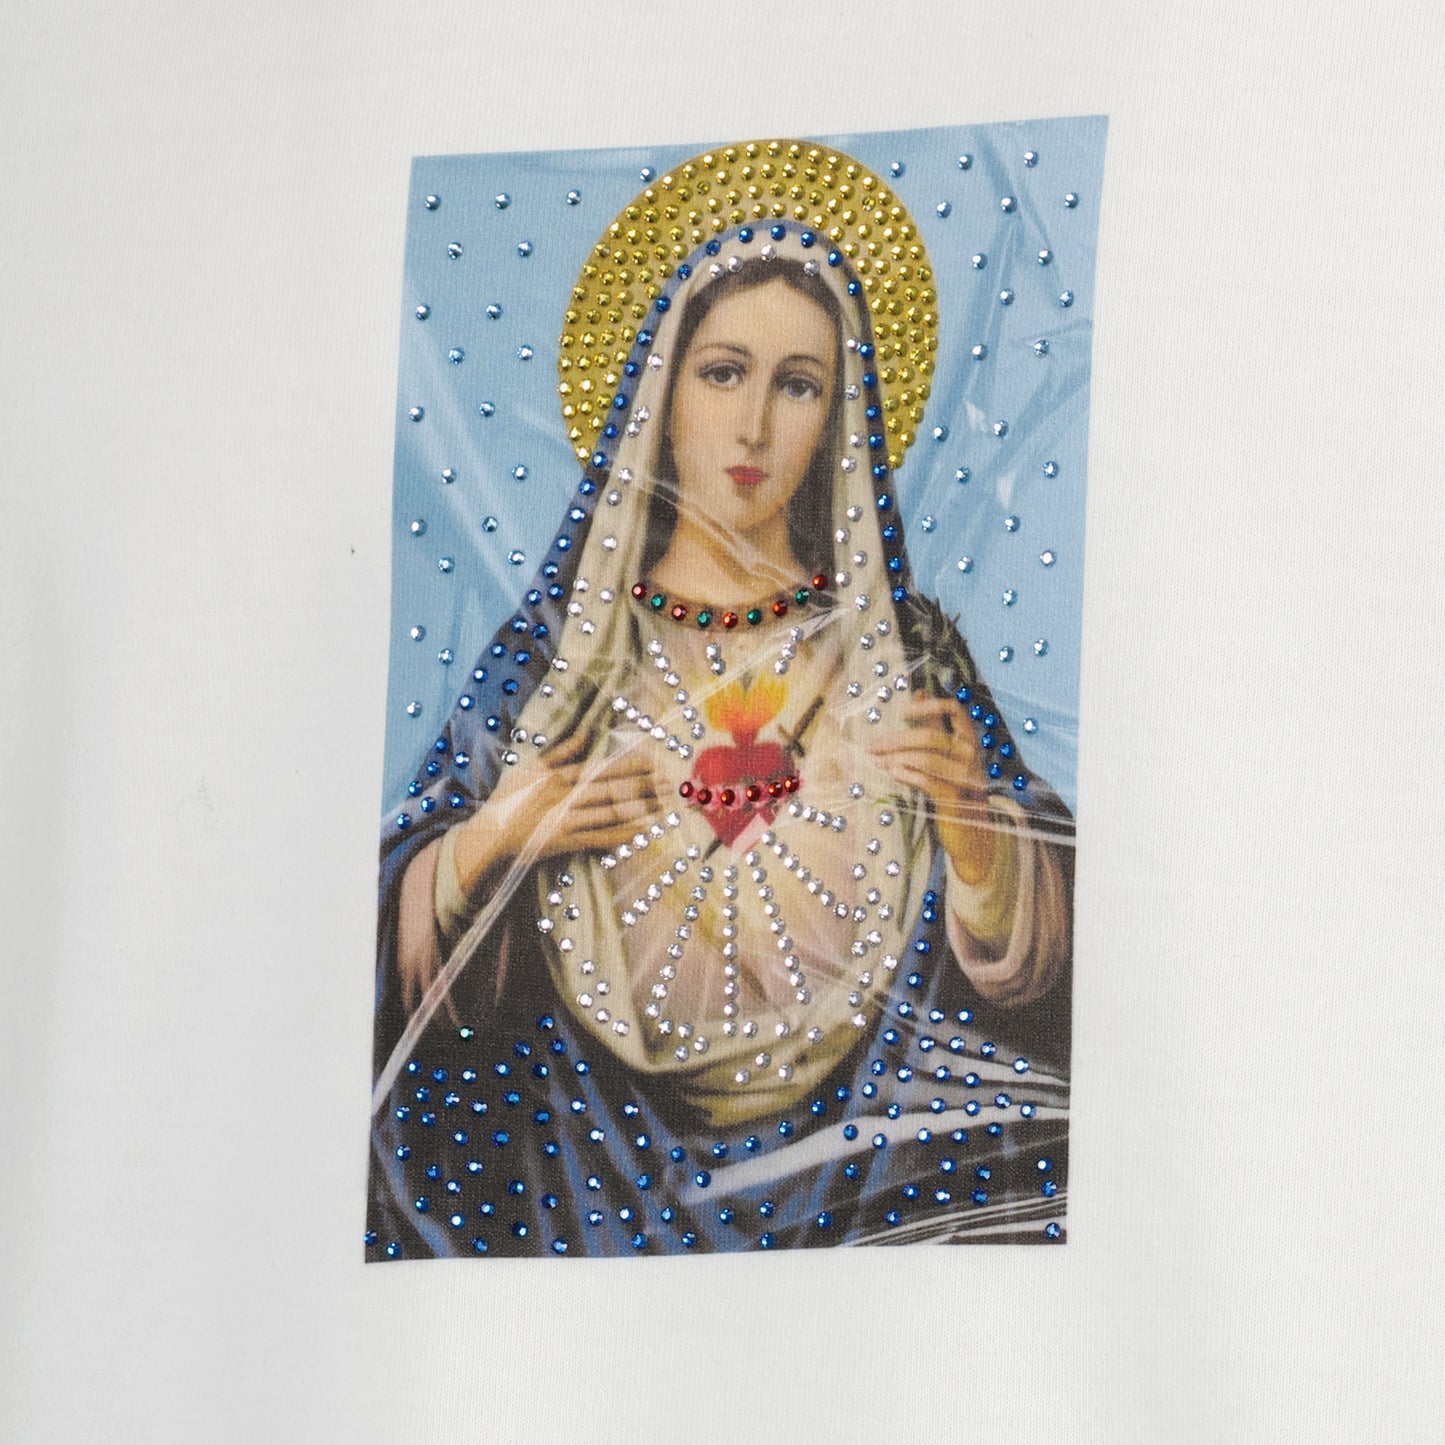 宗教的なプリント T シャツ